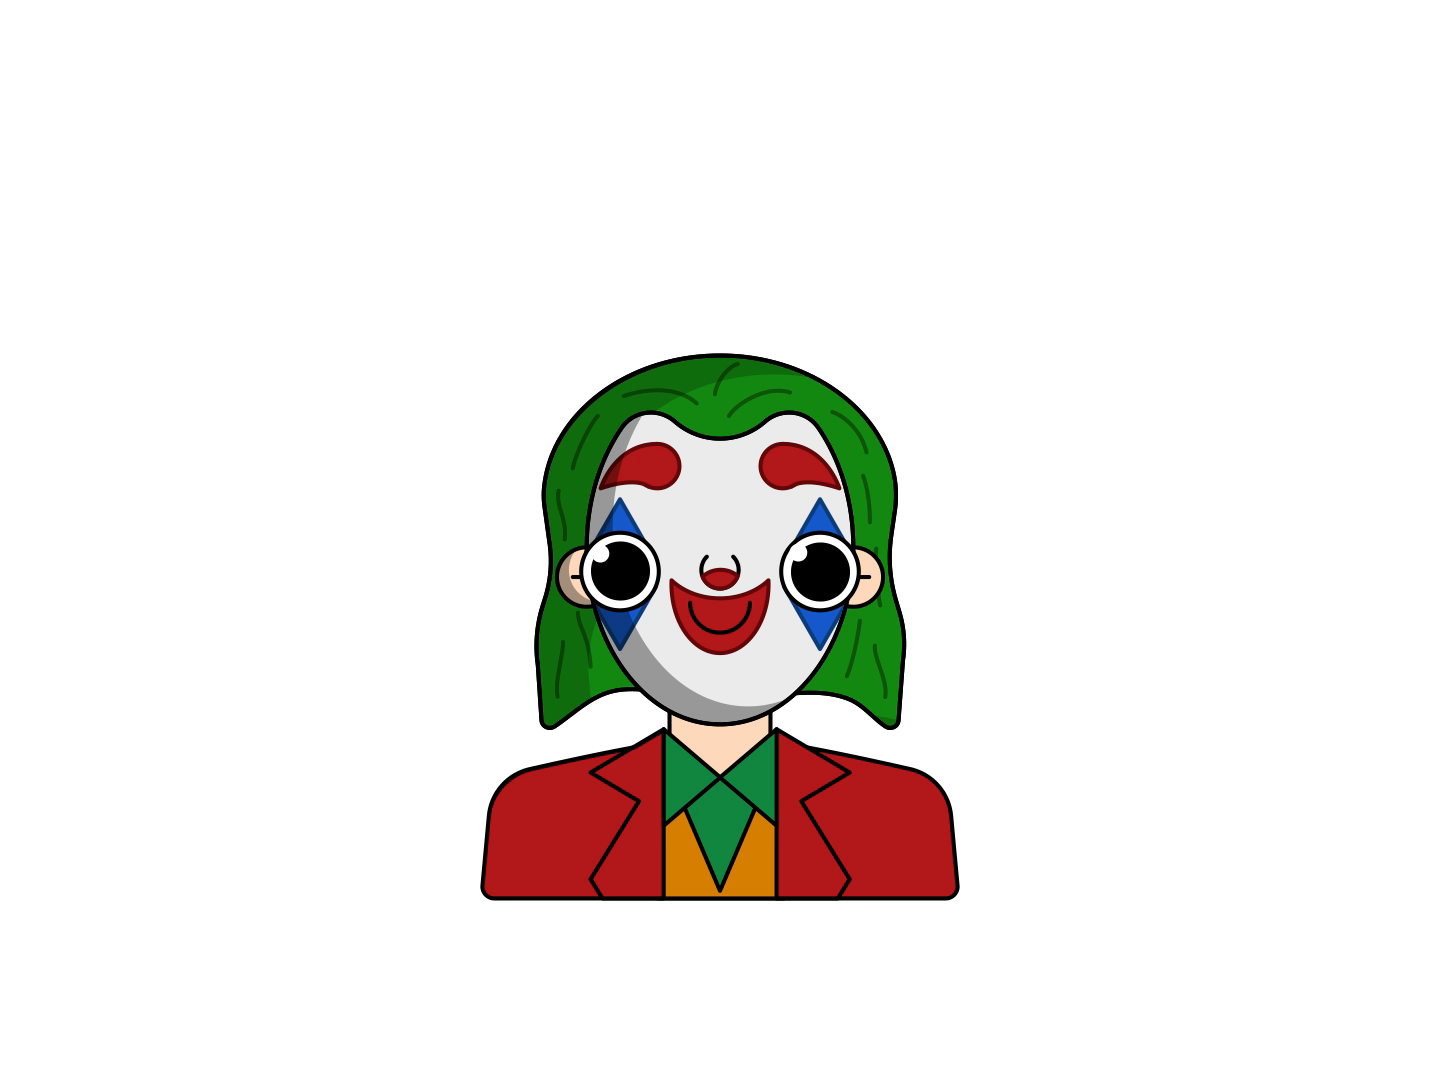 100+] Joker Persona 5 Wallpapers | Wallpapers.com